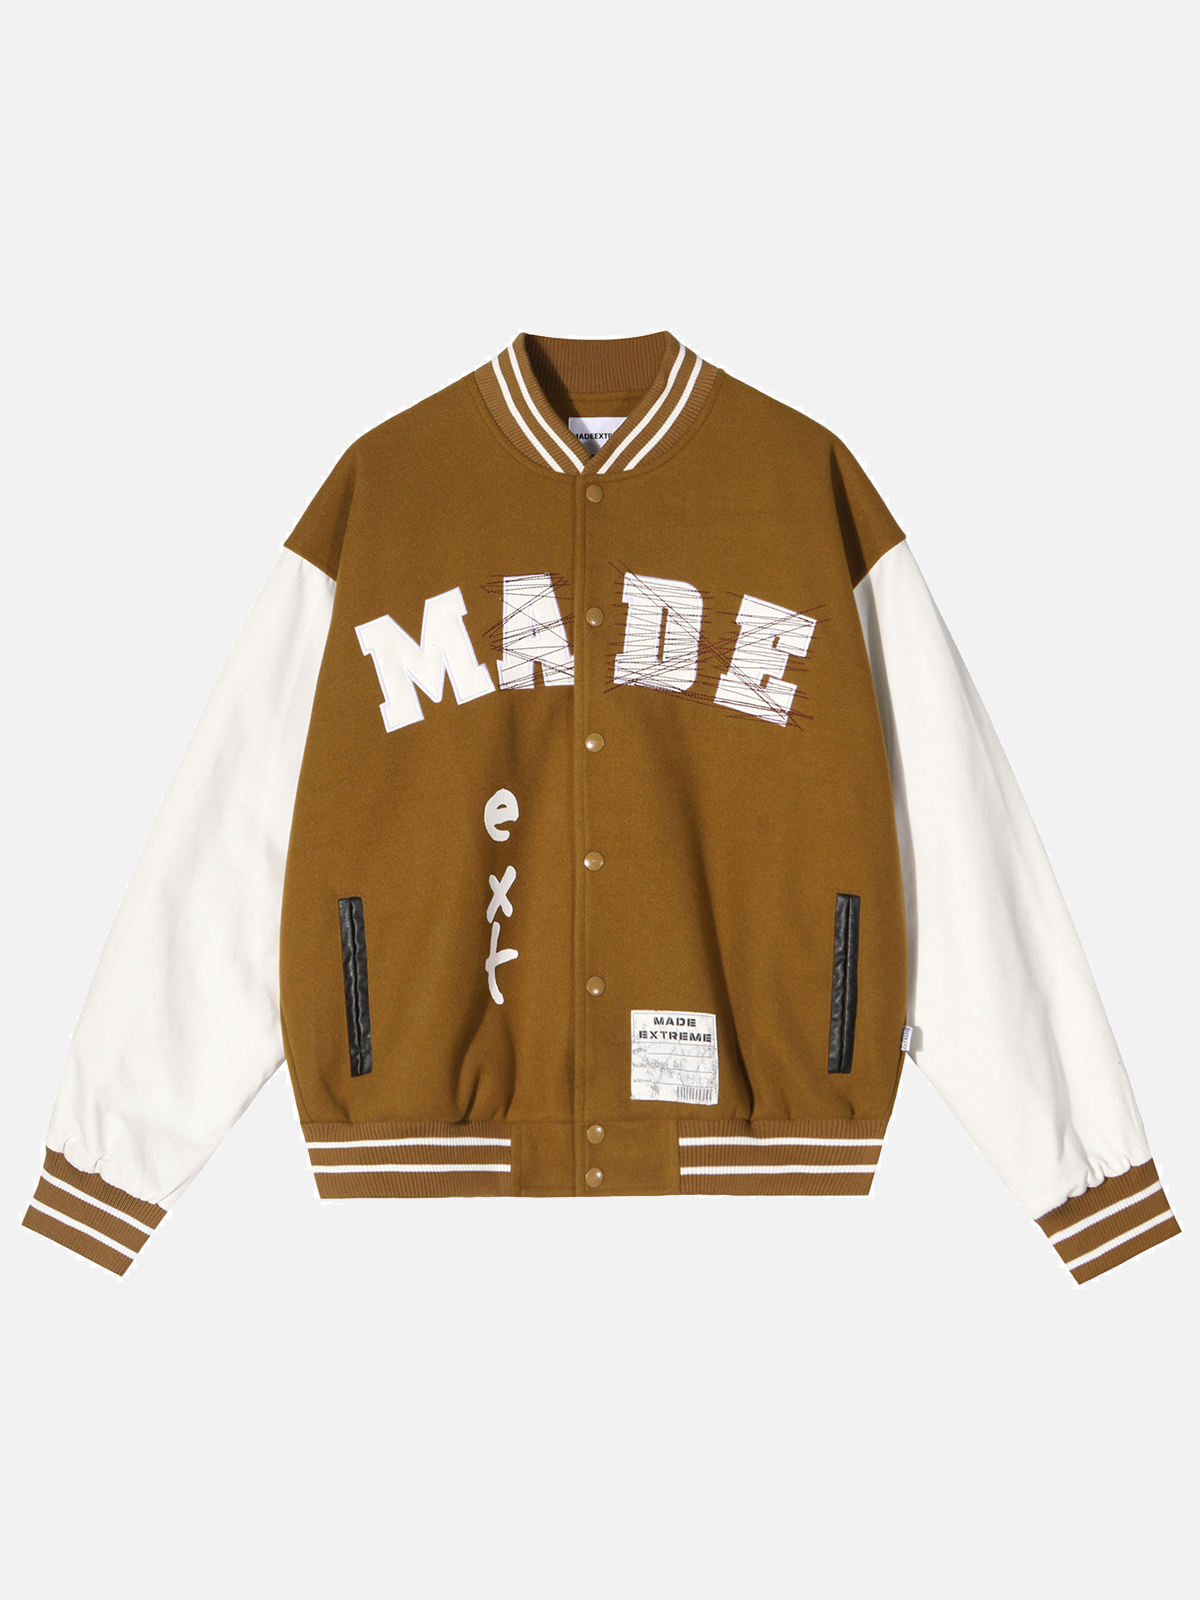 Faire Echo "MADE" Baseball Embroidery Varsity Jacket